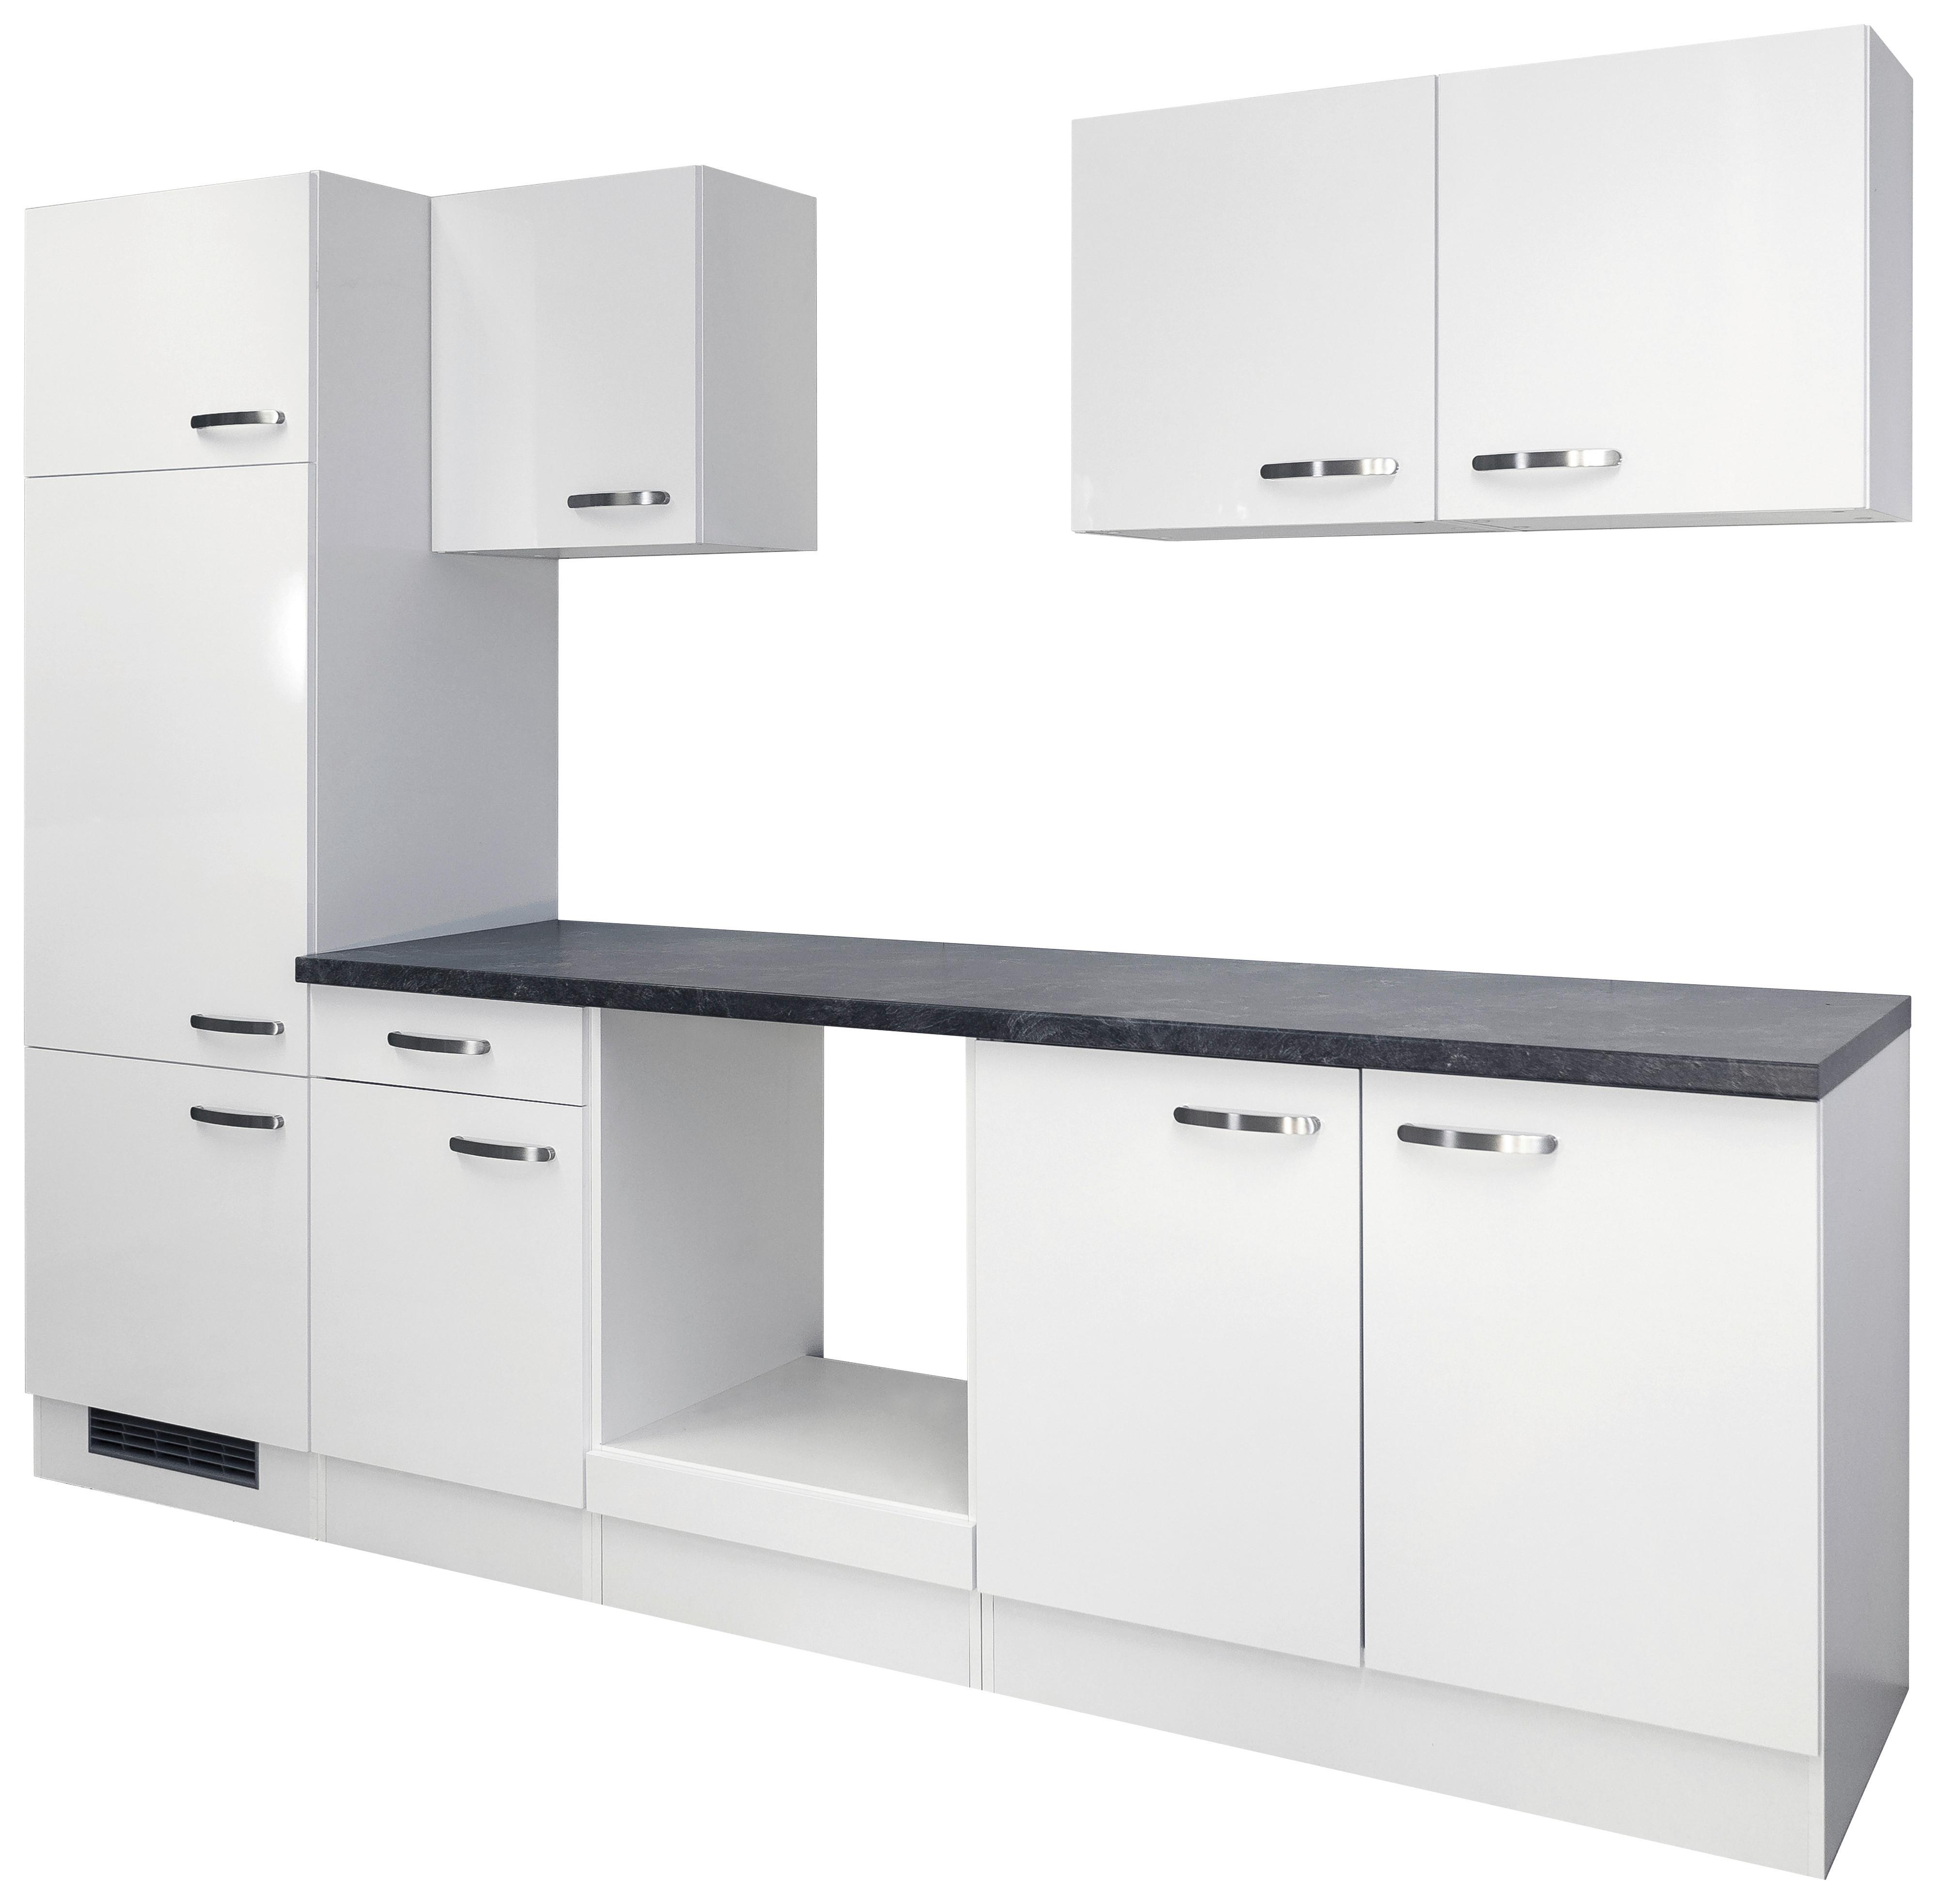 Küchenzeile Alba ohne Geräte 270 cm Weiß/Schiefer - Schieferfarben/Weiß, MODERN, Holzwerkstoff (270cm)